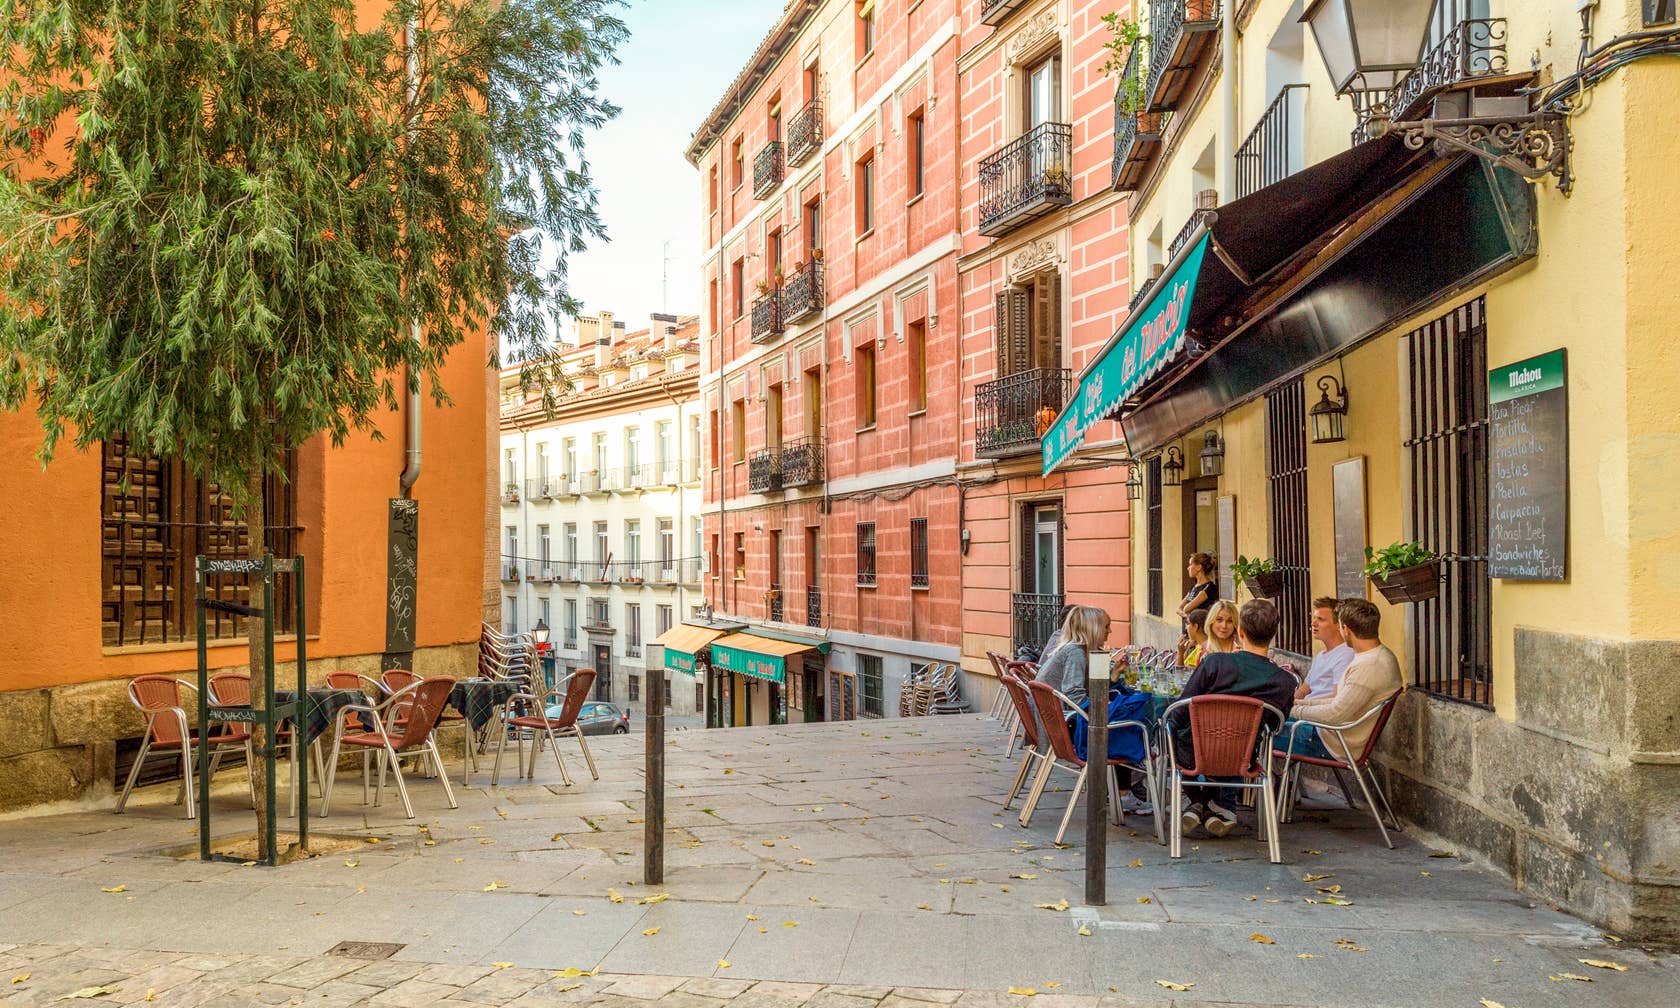 Ενοικιαζόμενοι χώροι για διακοπές στην τοποθεσία Μαδρίτη